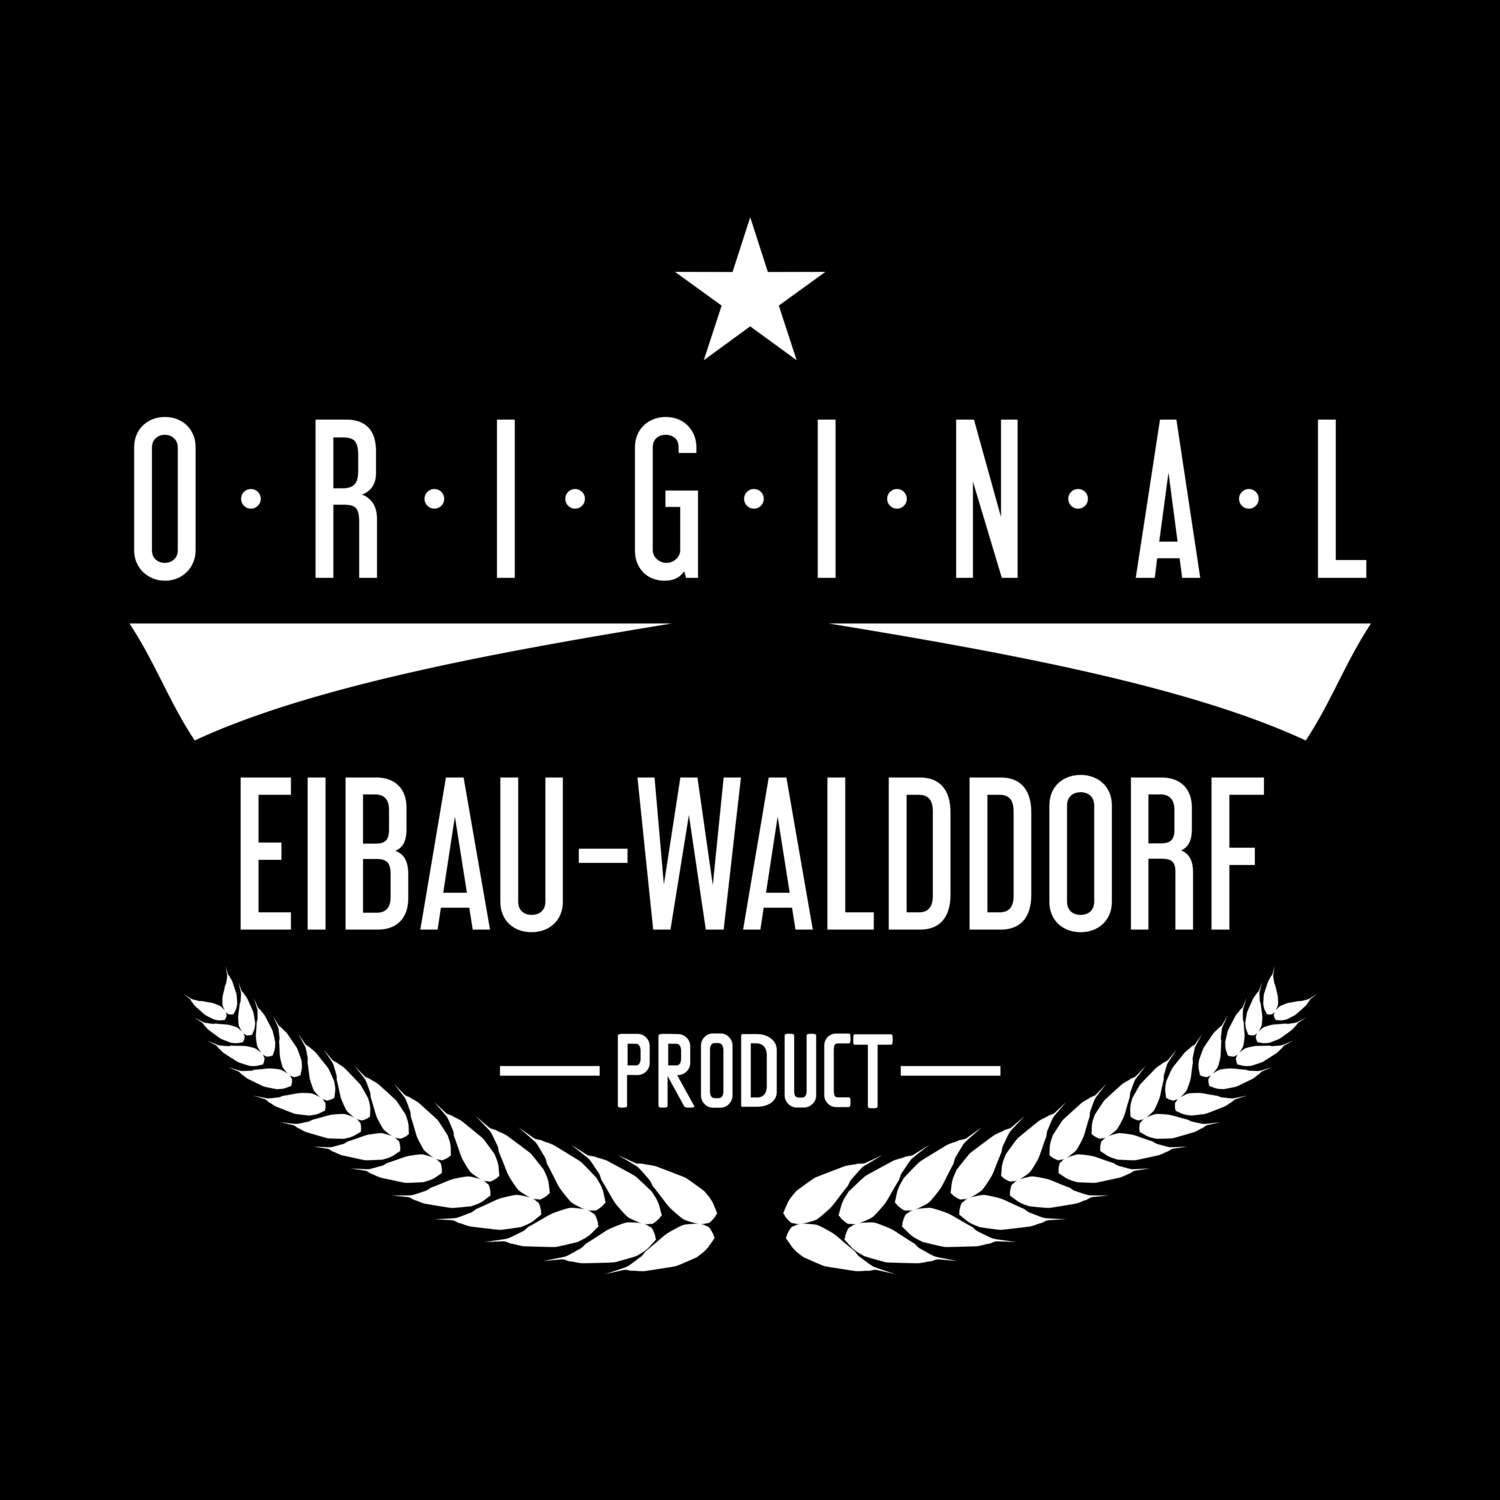 Eibau-Walddorf T-Shirt »Original Product«